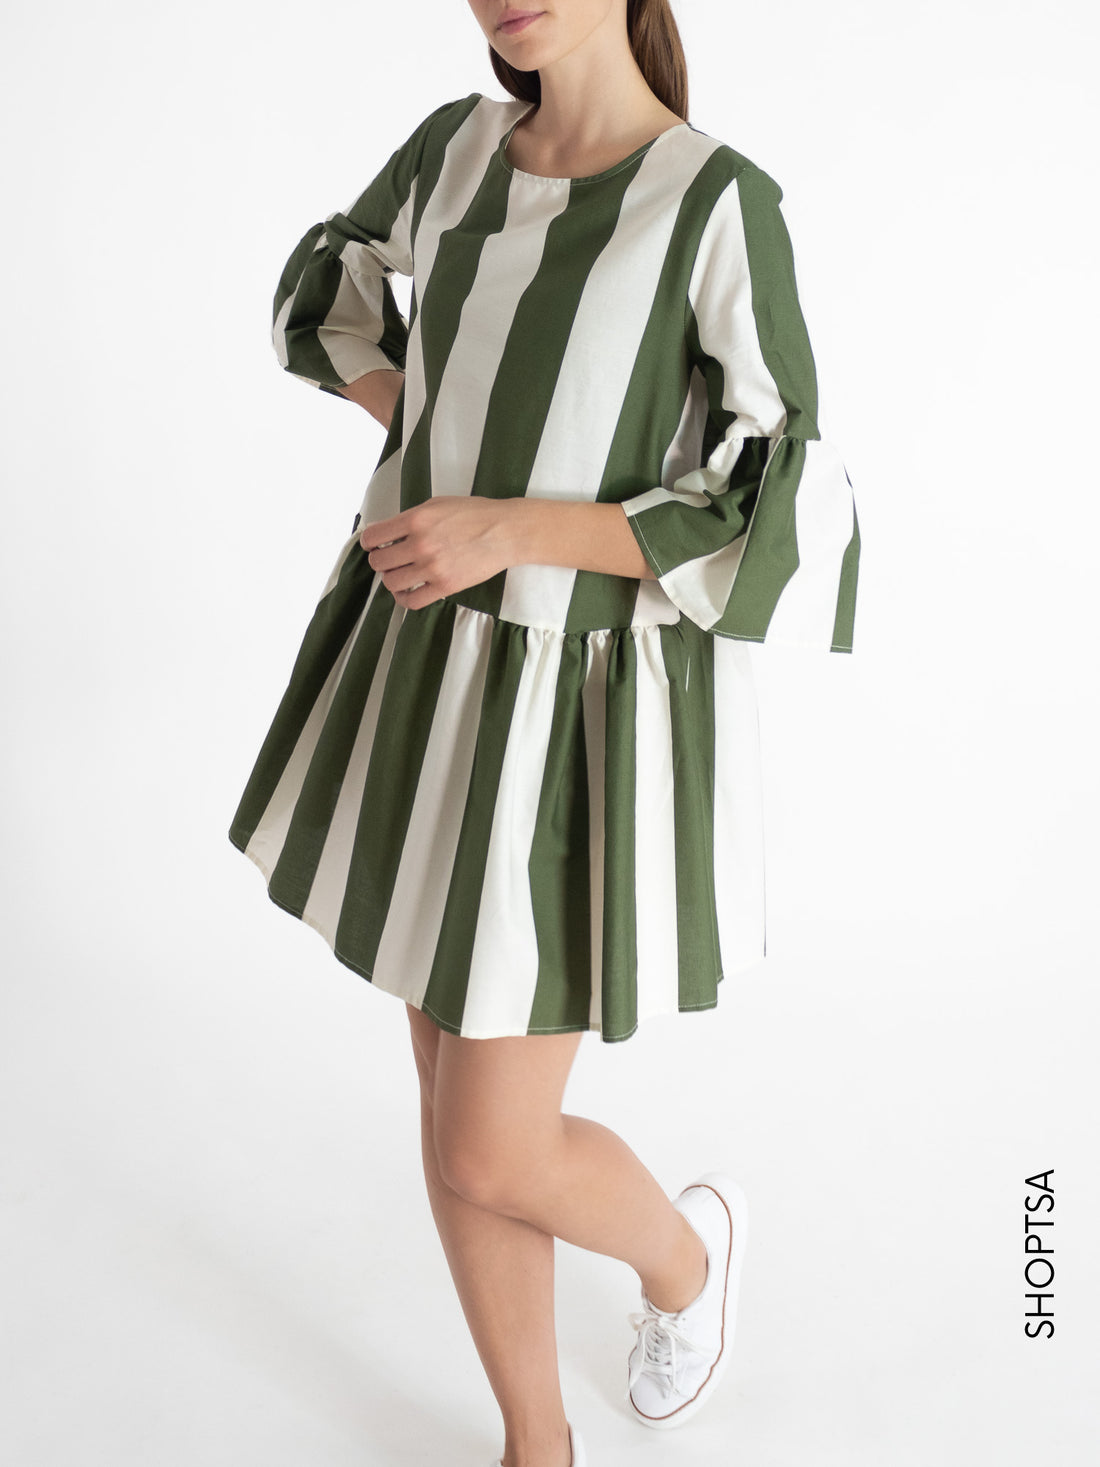 Striped dress TY1647 - ViCOLO